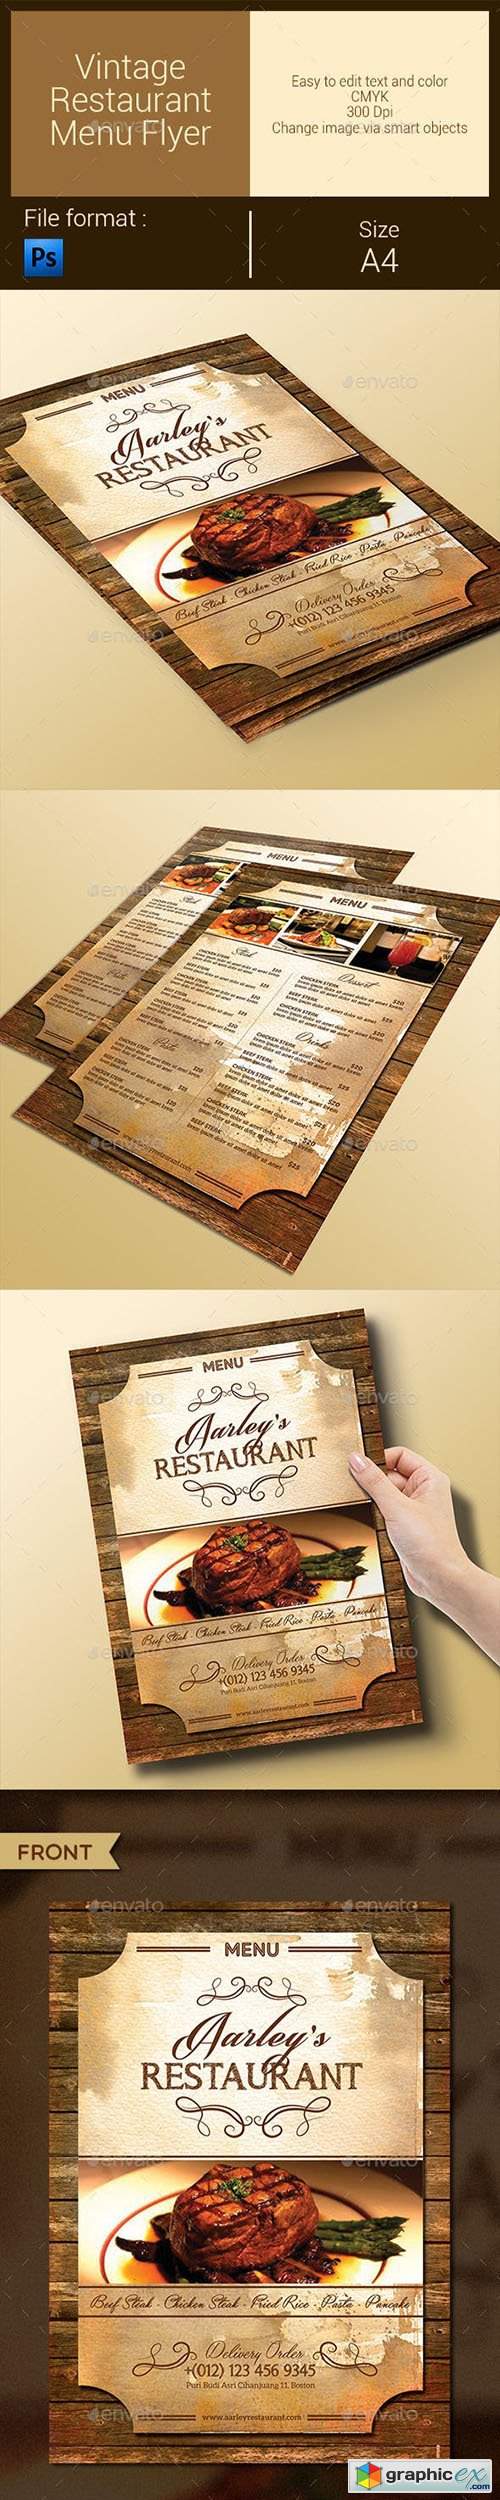 Vintage Restaurant Menu Flyer 9575758